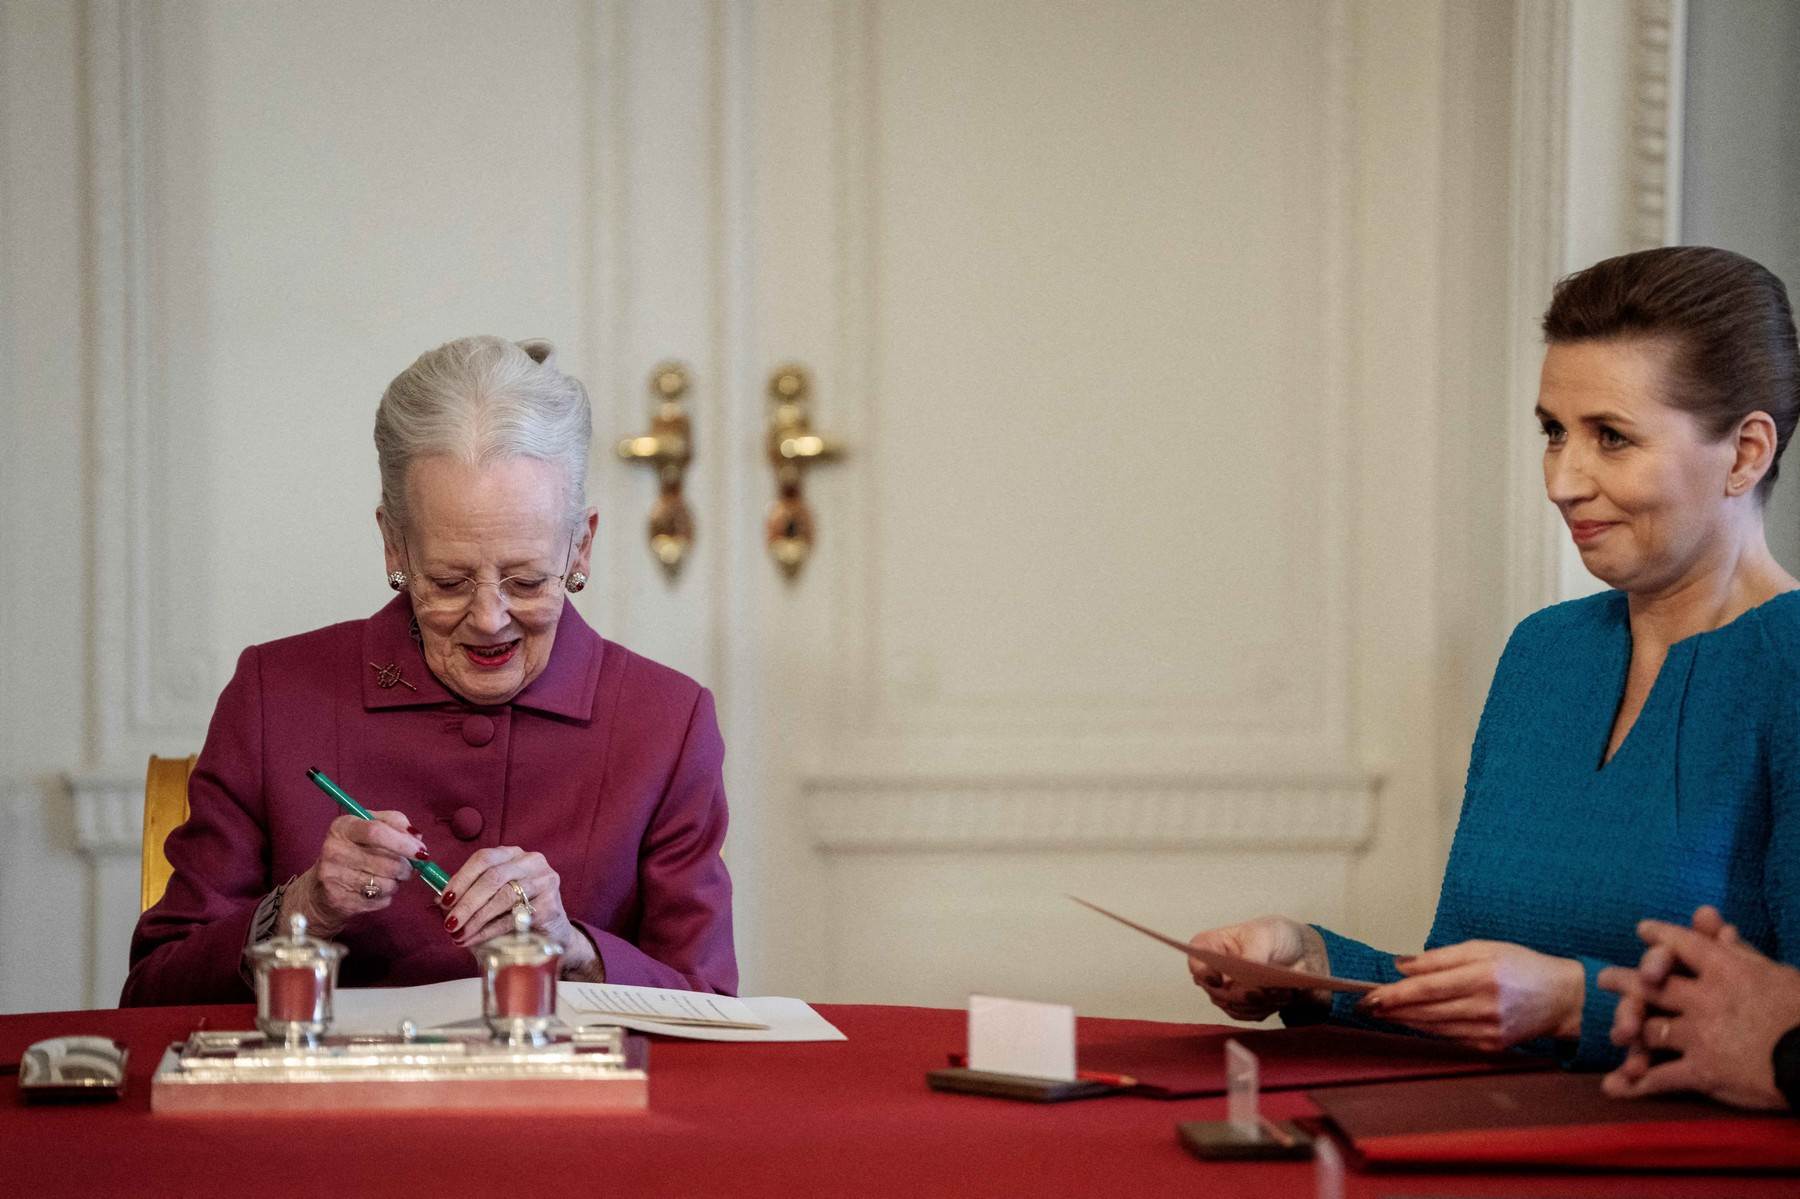  Danska kraljica Margareta II. potpisuje abdikaciju 